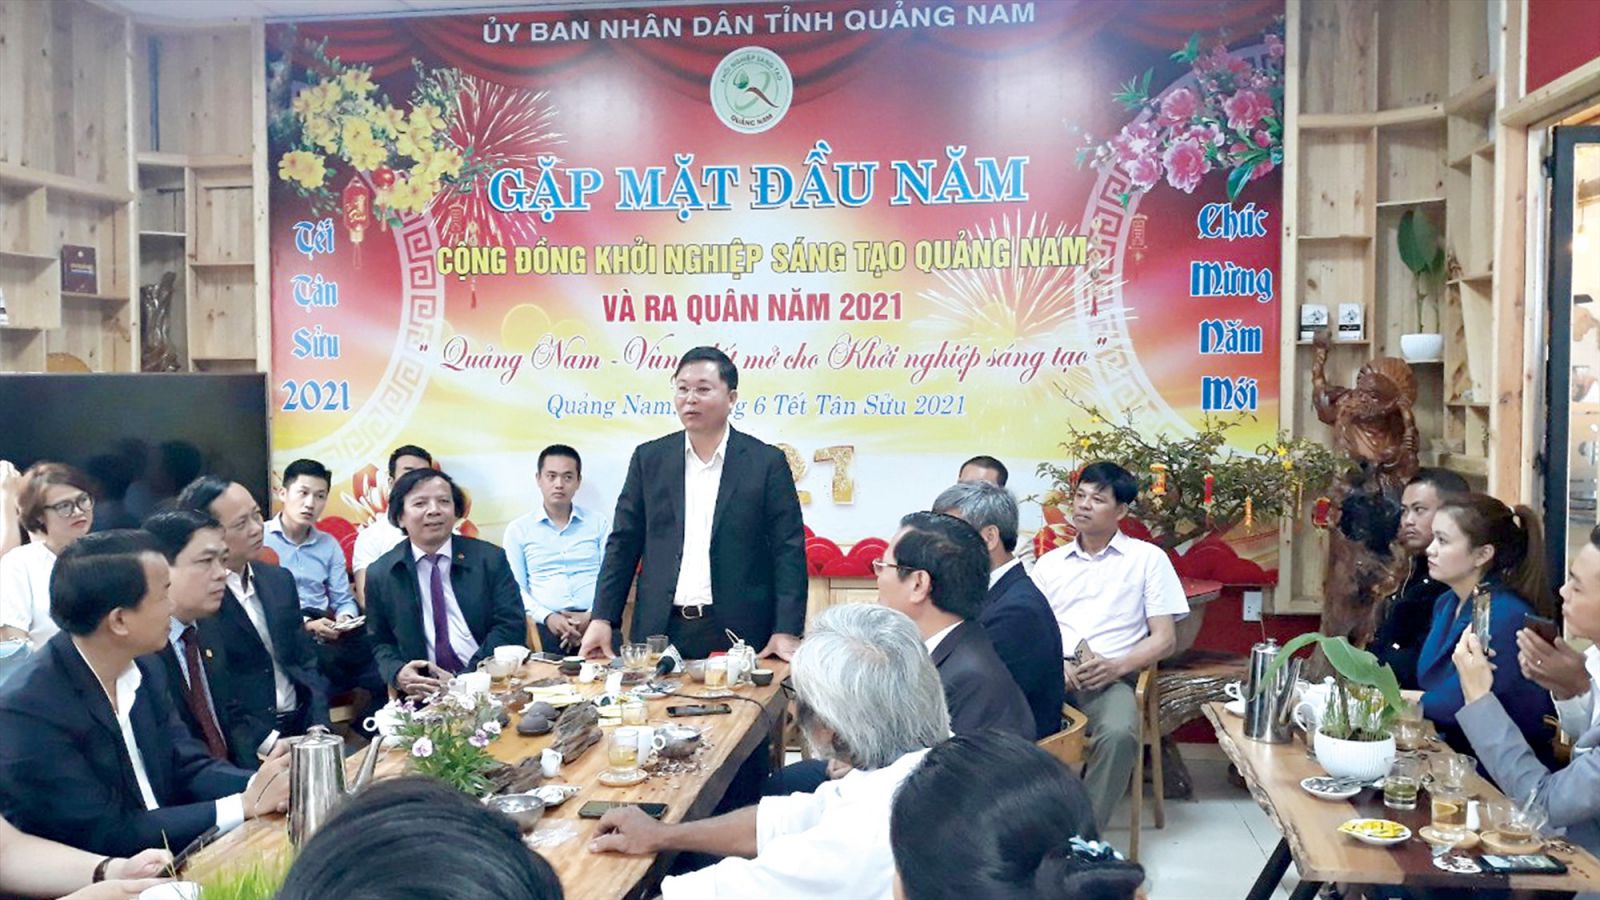 Chủ tịch UBND tỉnh Quảng Nam Lê Trí Thanh sáng hôm nay (18/2) đã mời các doanh nghiệp du lịch tại Đà Nẵng, Quảng Nam uống cà phê sáng đầu năm